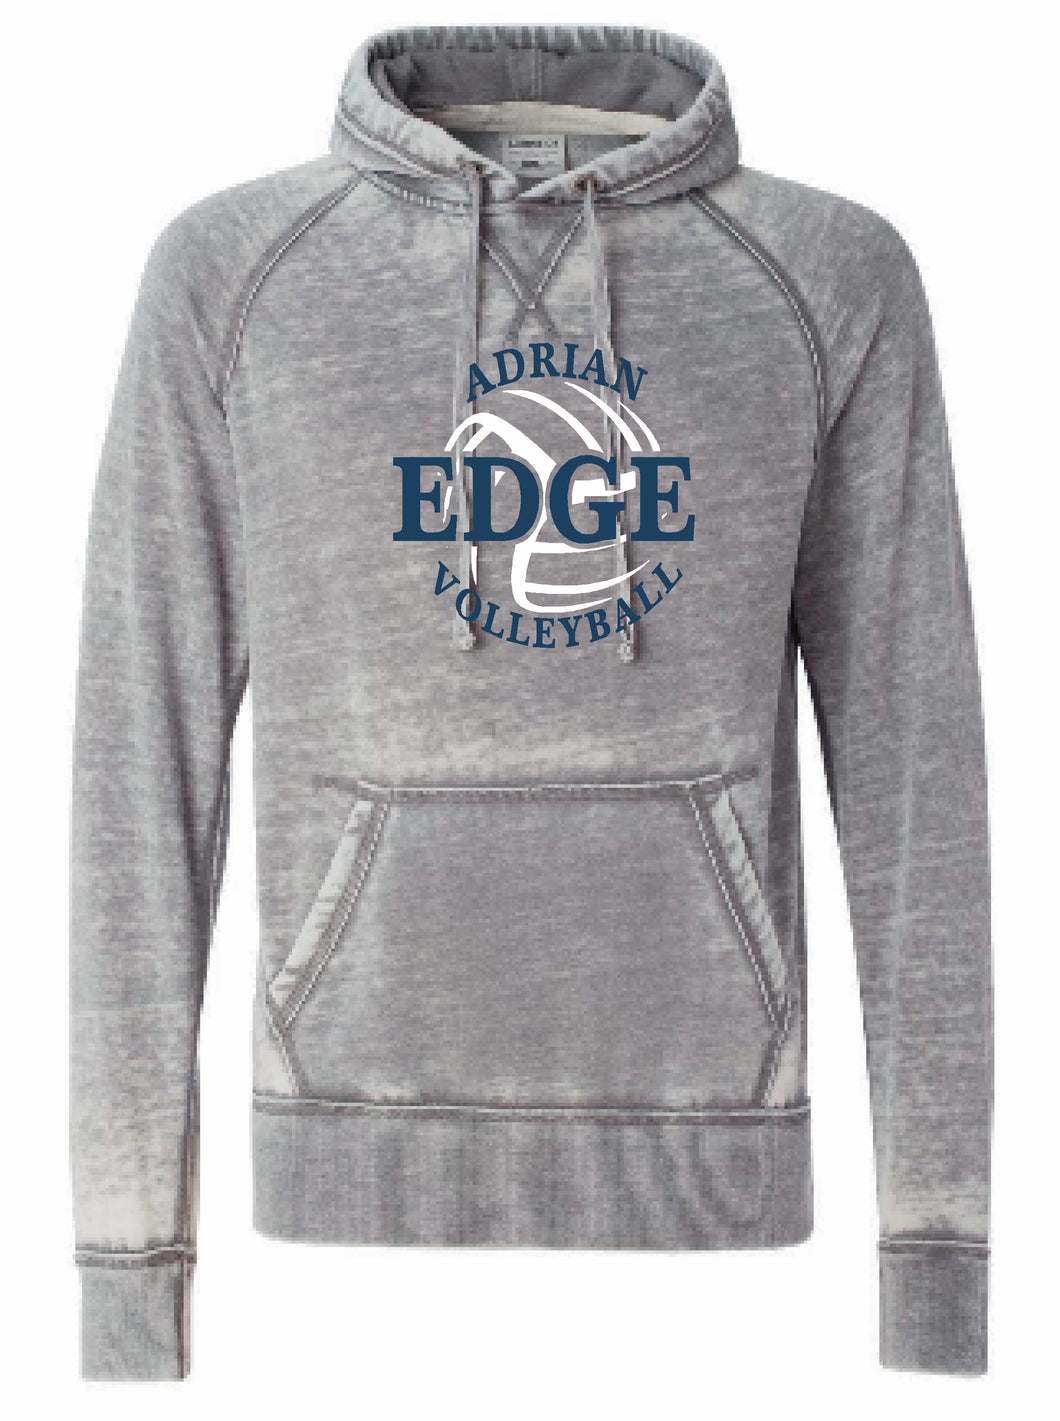 ADRIAN EDGE VOLLEYBALL J. America - Vintage Zen Fleece Hooded Pullover Sweatshirt